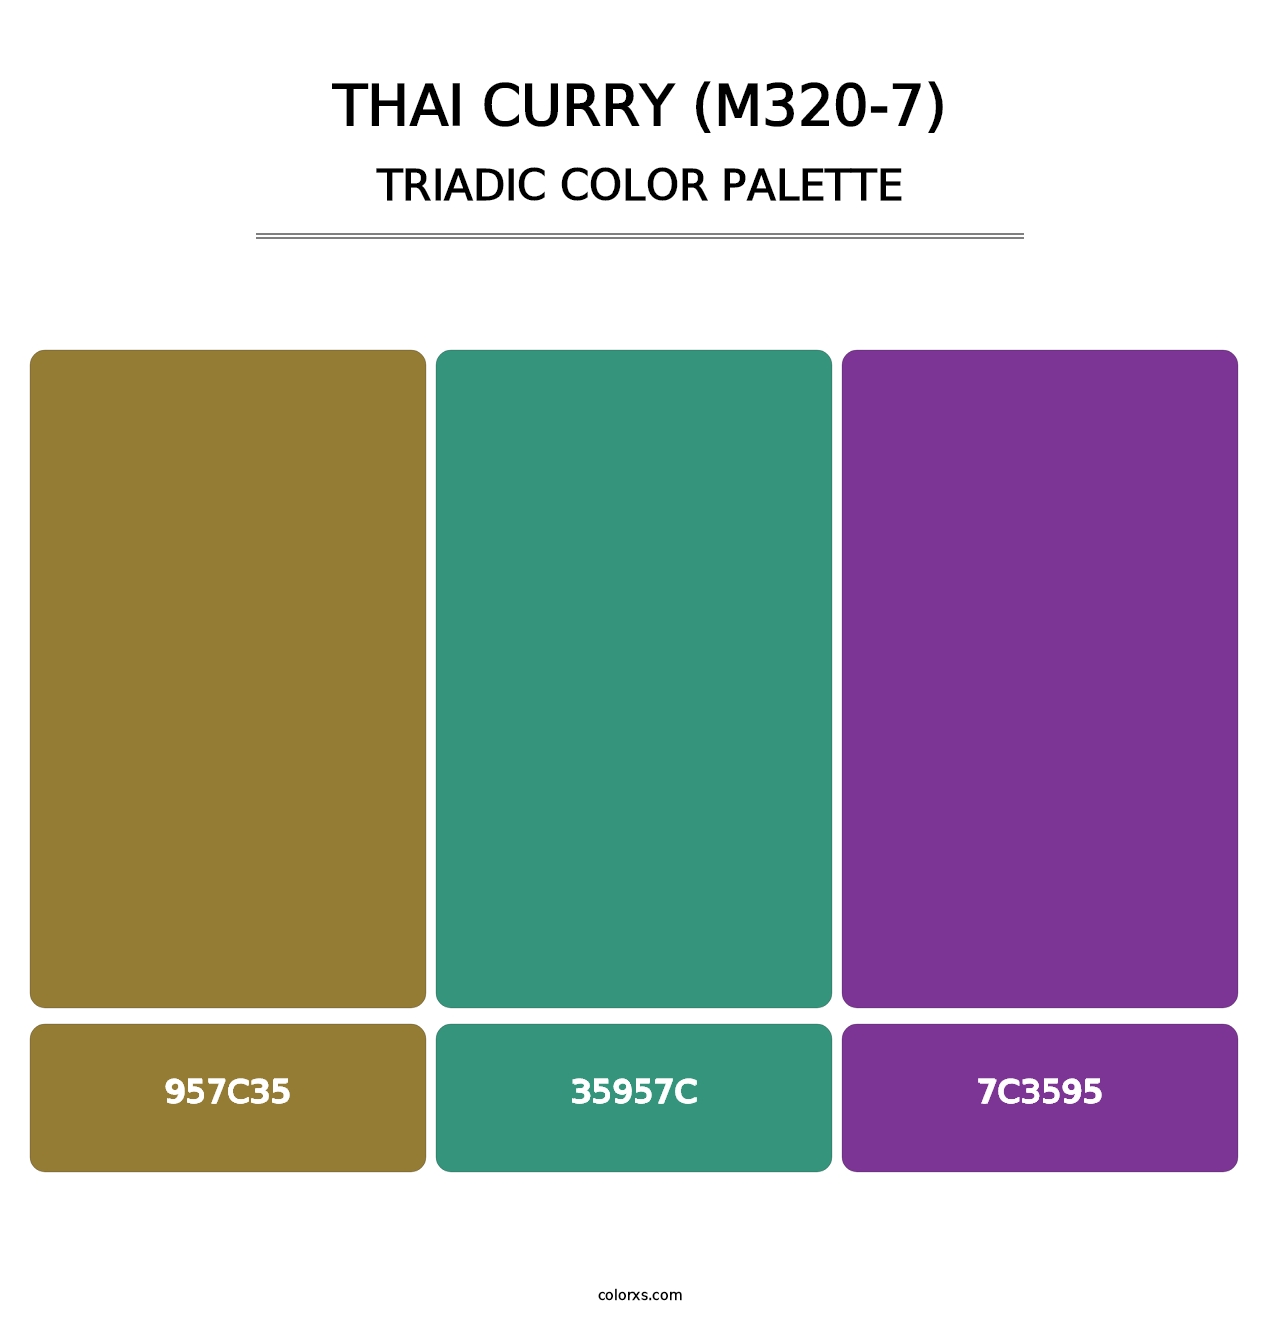 Thai Curry (M320-7) - Triadic Color Palette